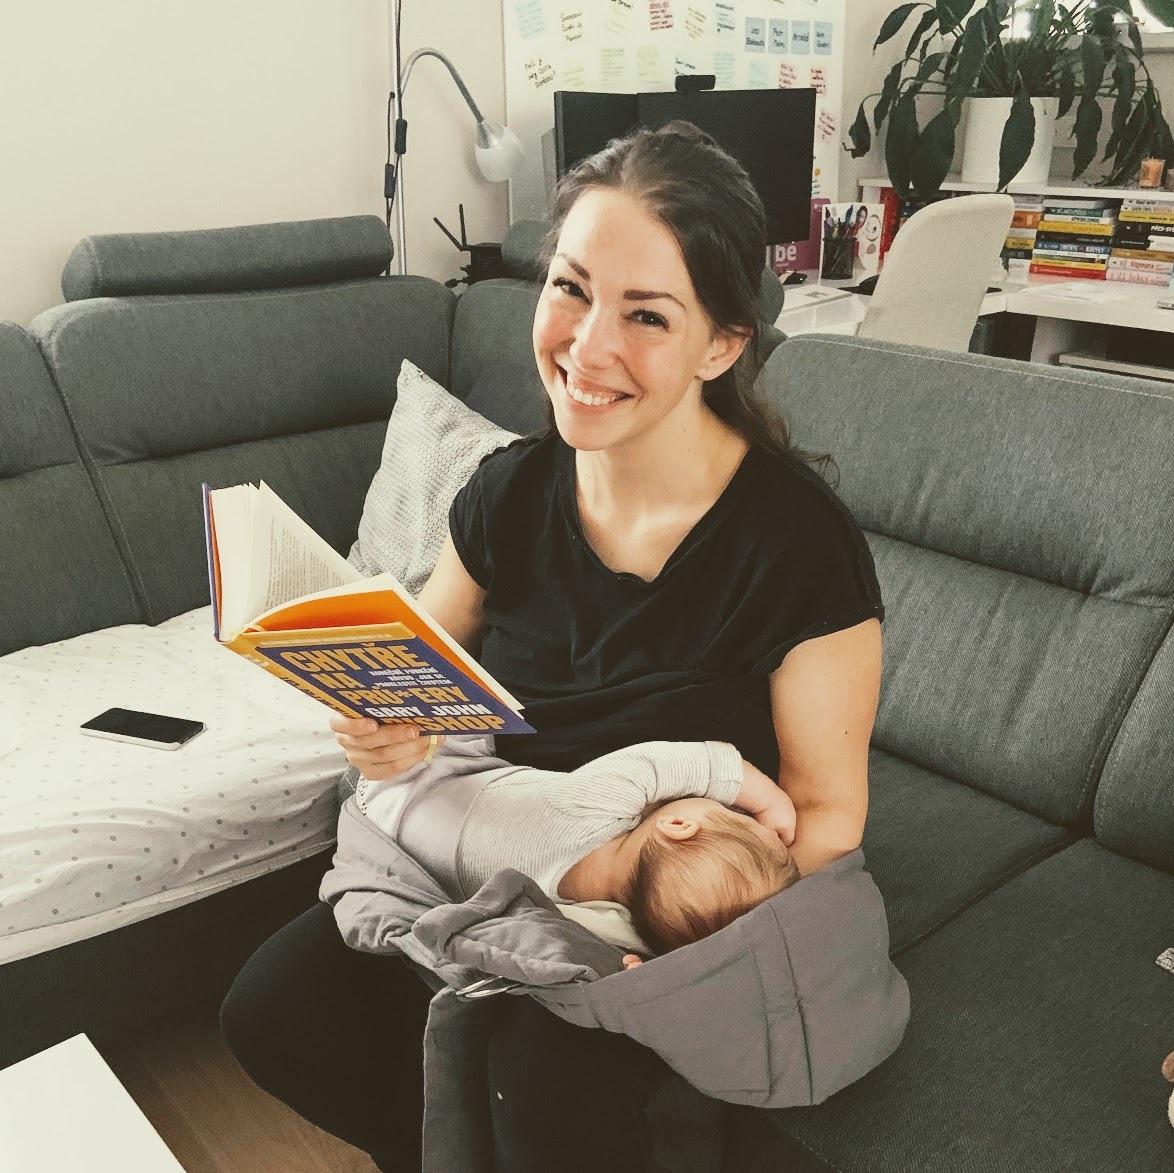 Fotka, jak sedím na gauči, jednou rukou přidržuju spícího tříměsíčního syna, který mi usnul na klíně, a v druhé ruce držím knížku, kterou si takto v pár minutách klidu čtu.